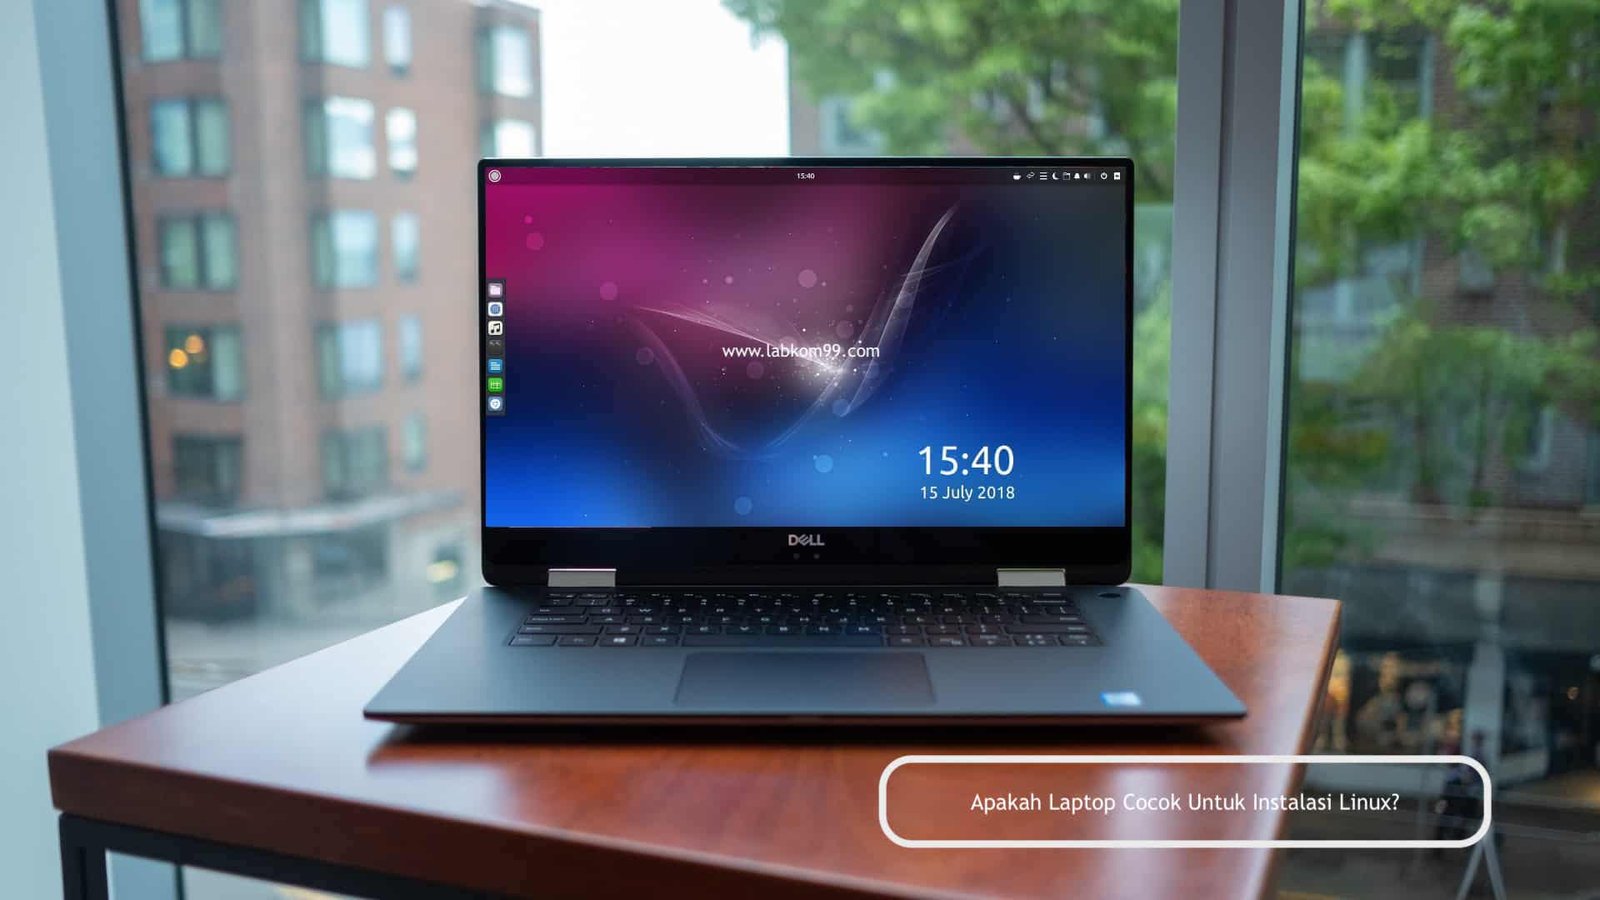 Apakah Laptop Cocok Untuk Instalasi Linux?